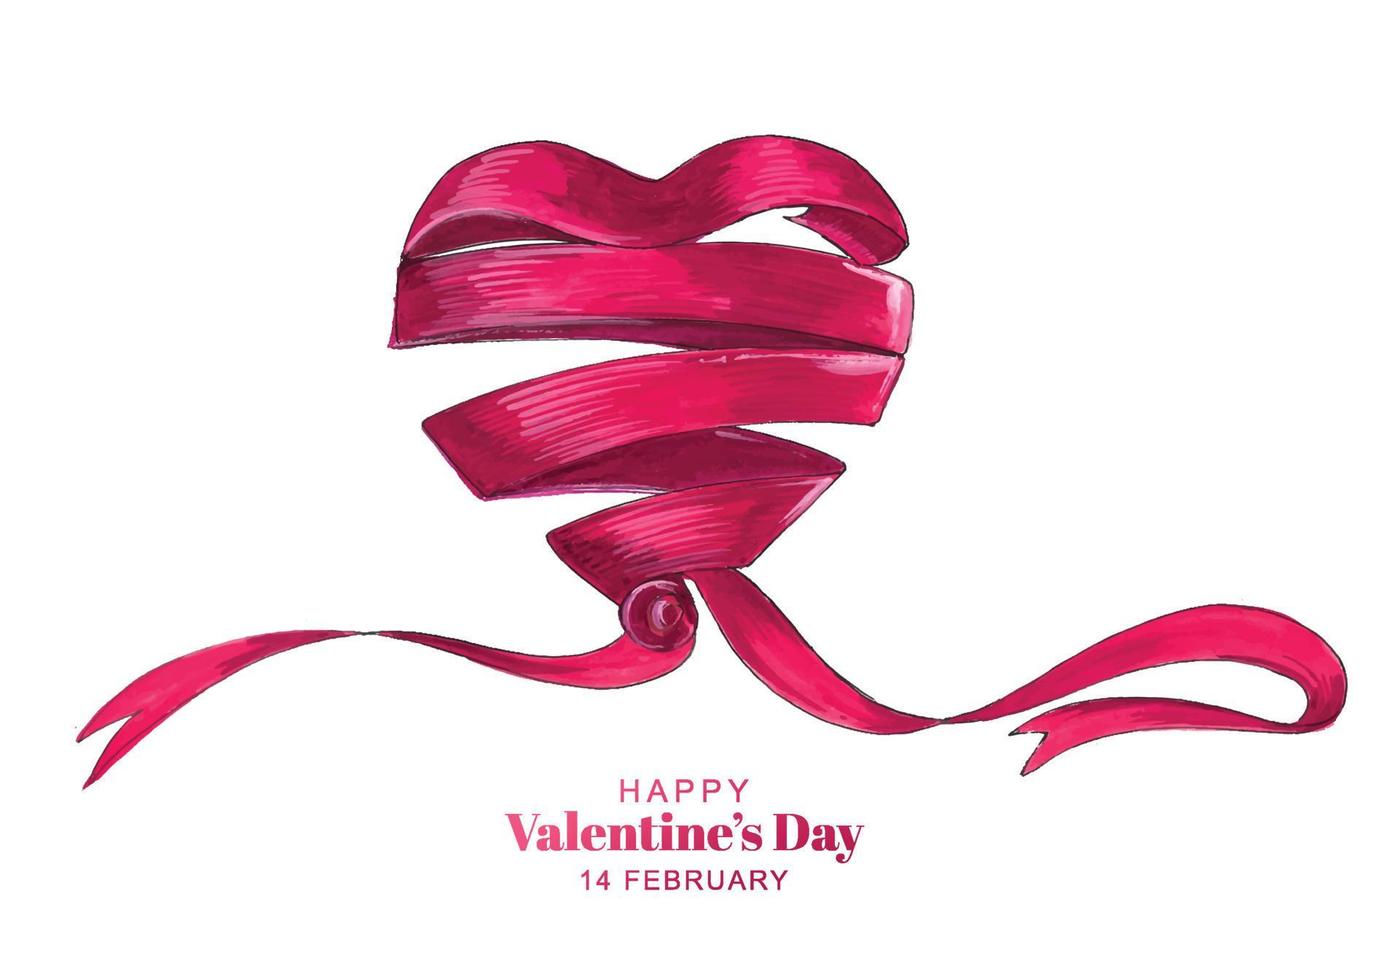 mooie gekrulde hartvorm lint Valentijnsdag kaart achtergrond vector